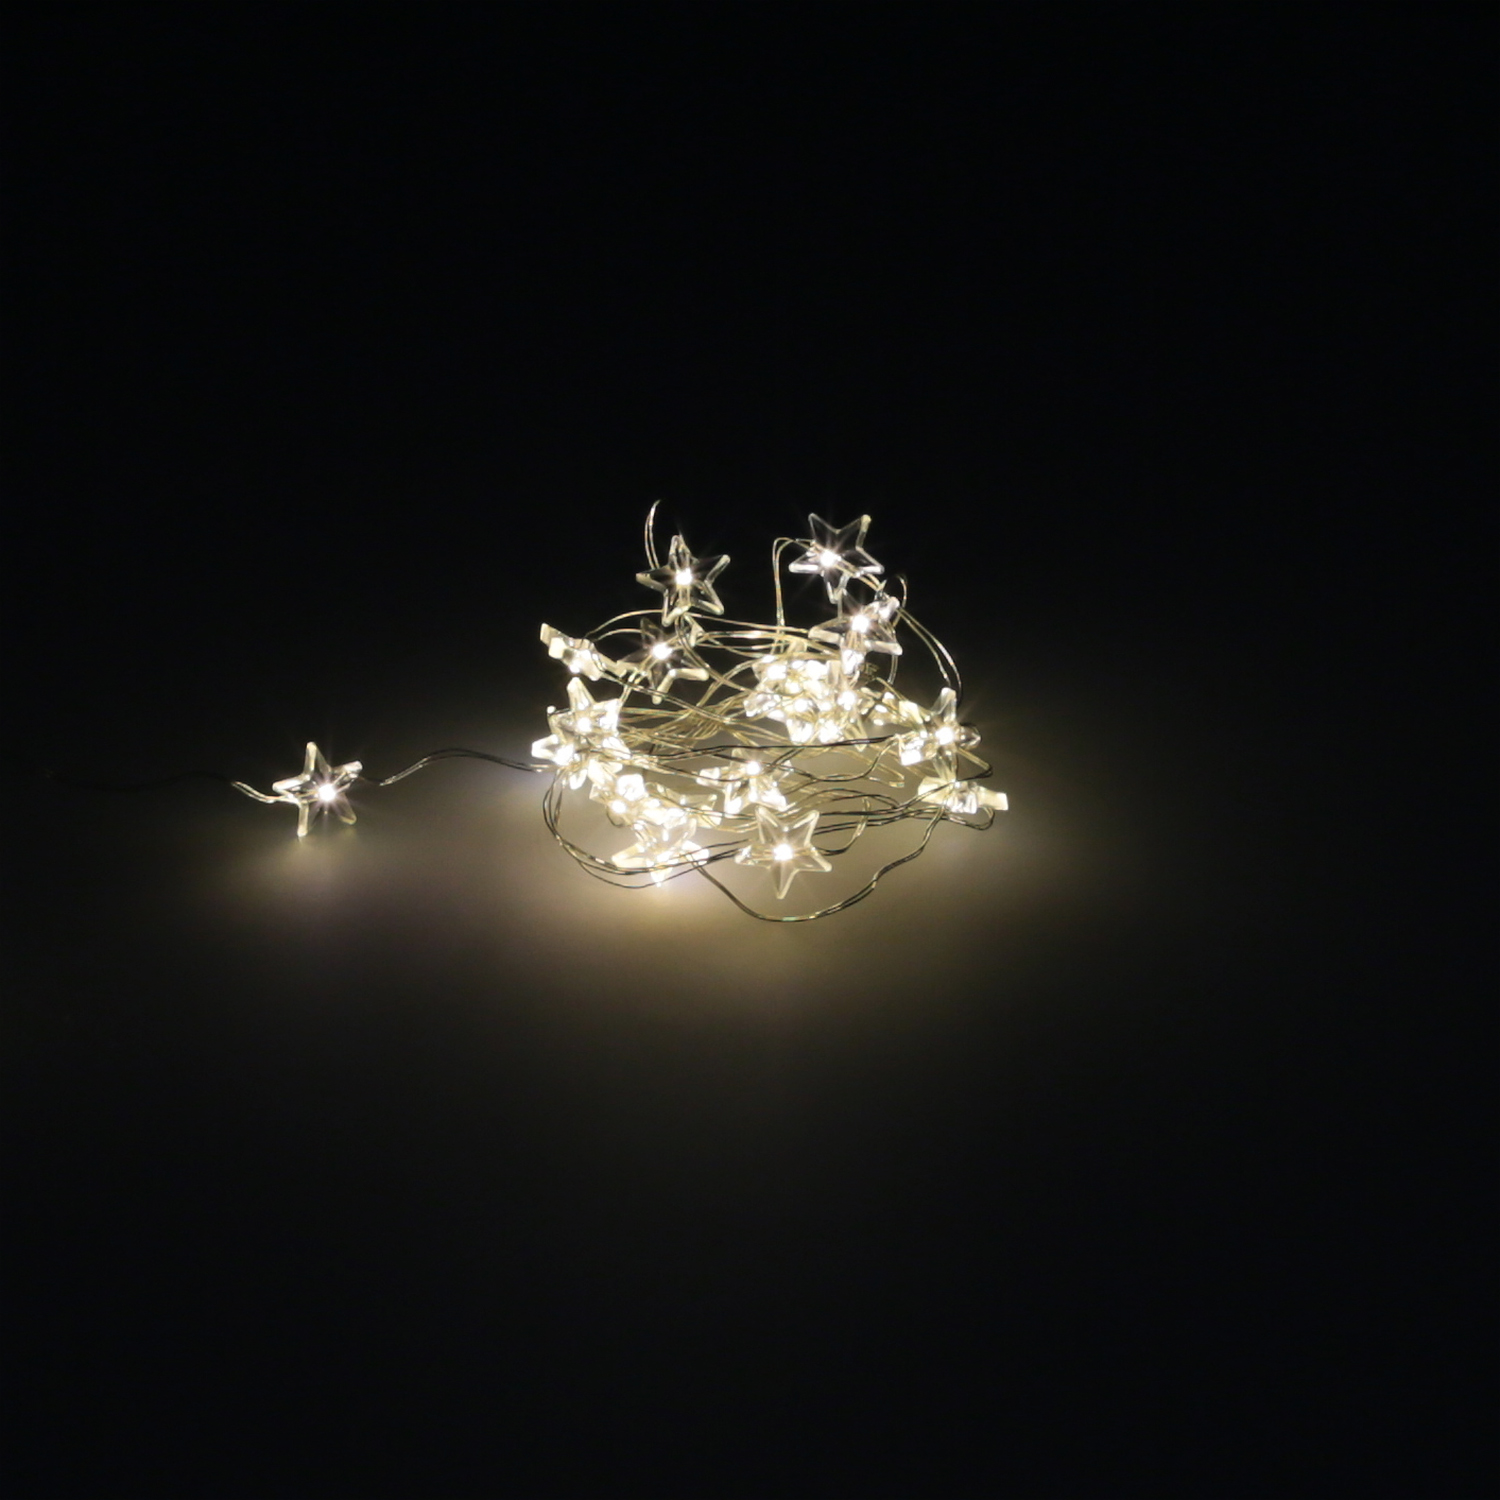 Guirnalda Luces Navidad Estrellas 20 Leds Color Blanco Calido.Luz navidad interiores y exteriores IP